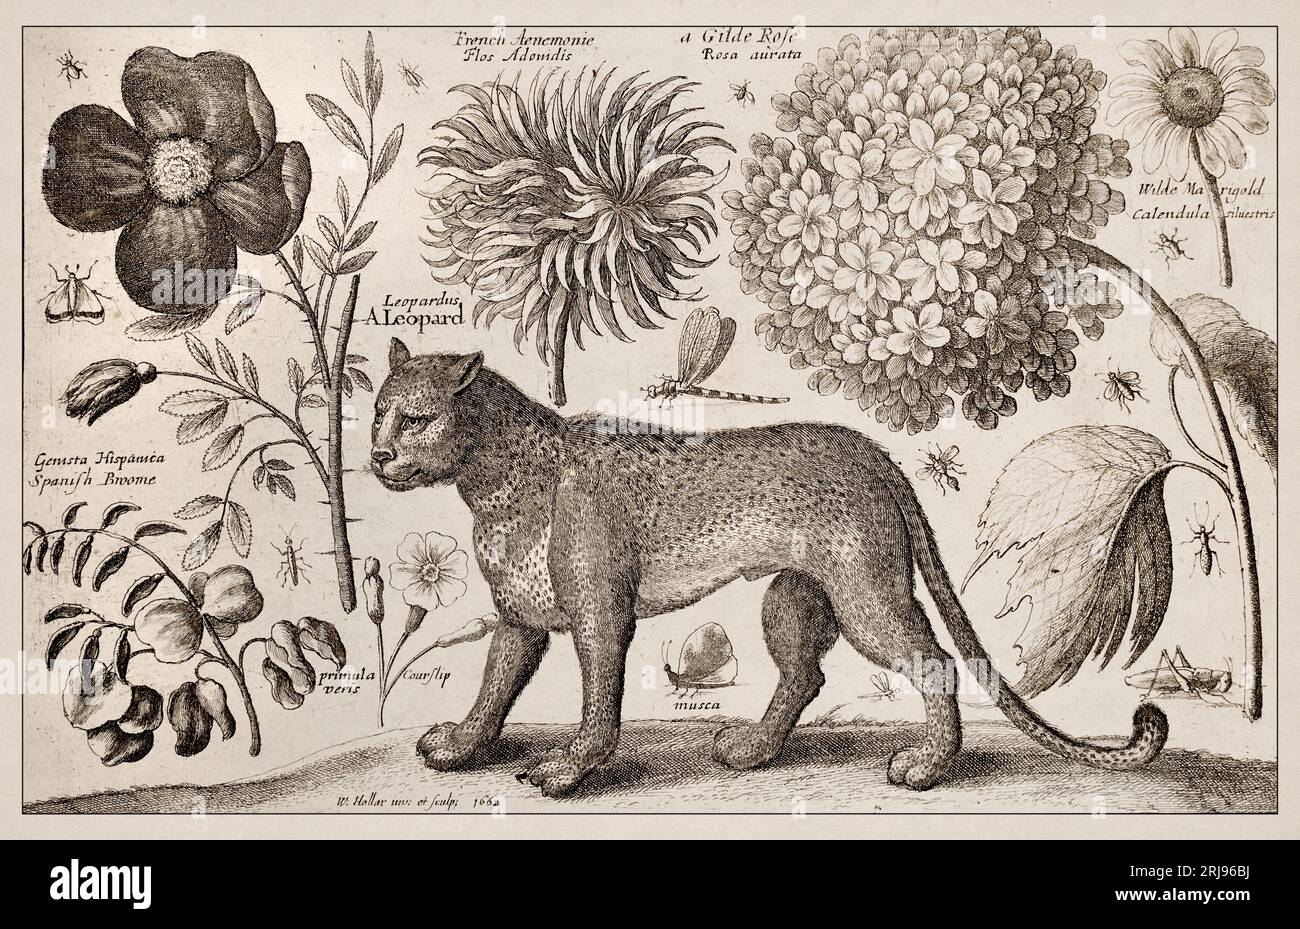 1663 Etching di Wenceslaus Hollar. Squisita rappresentazione antica di soggetti zoologici e botanici, finemente dettagliata su uno sfondo seppia. Leopa Foto Stock